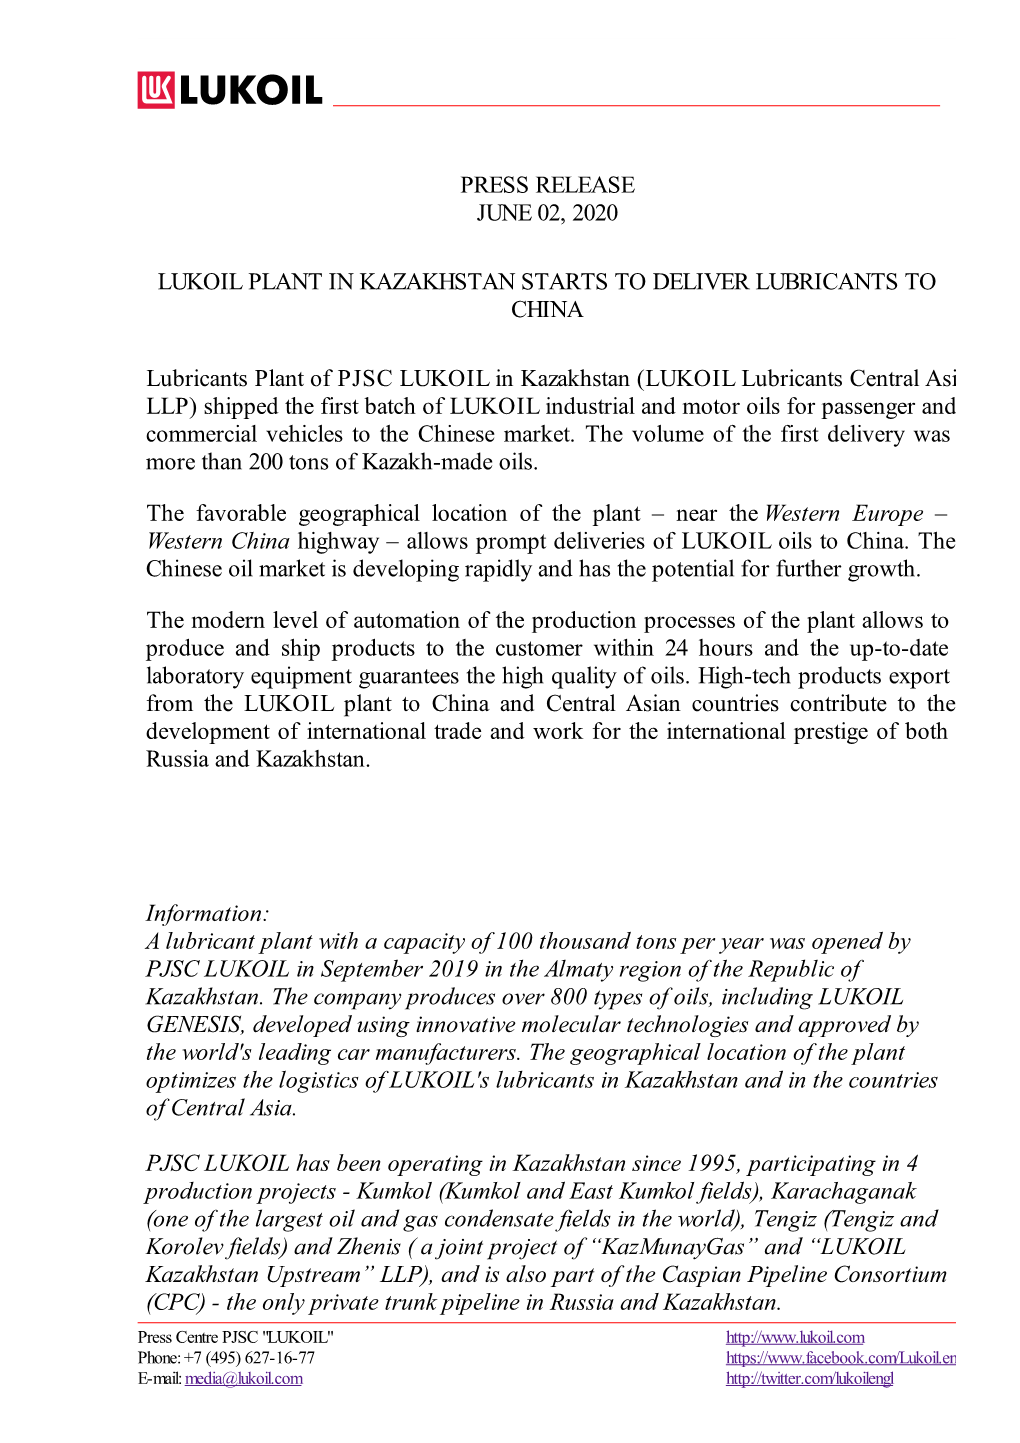 Press Release June 02, 2020 Lukoil Plant in Kazakhstan